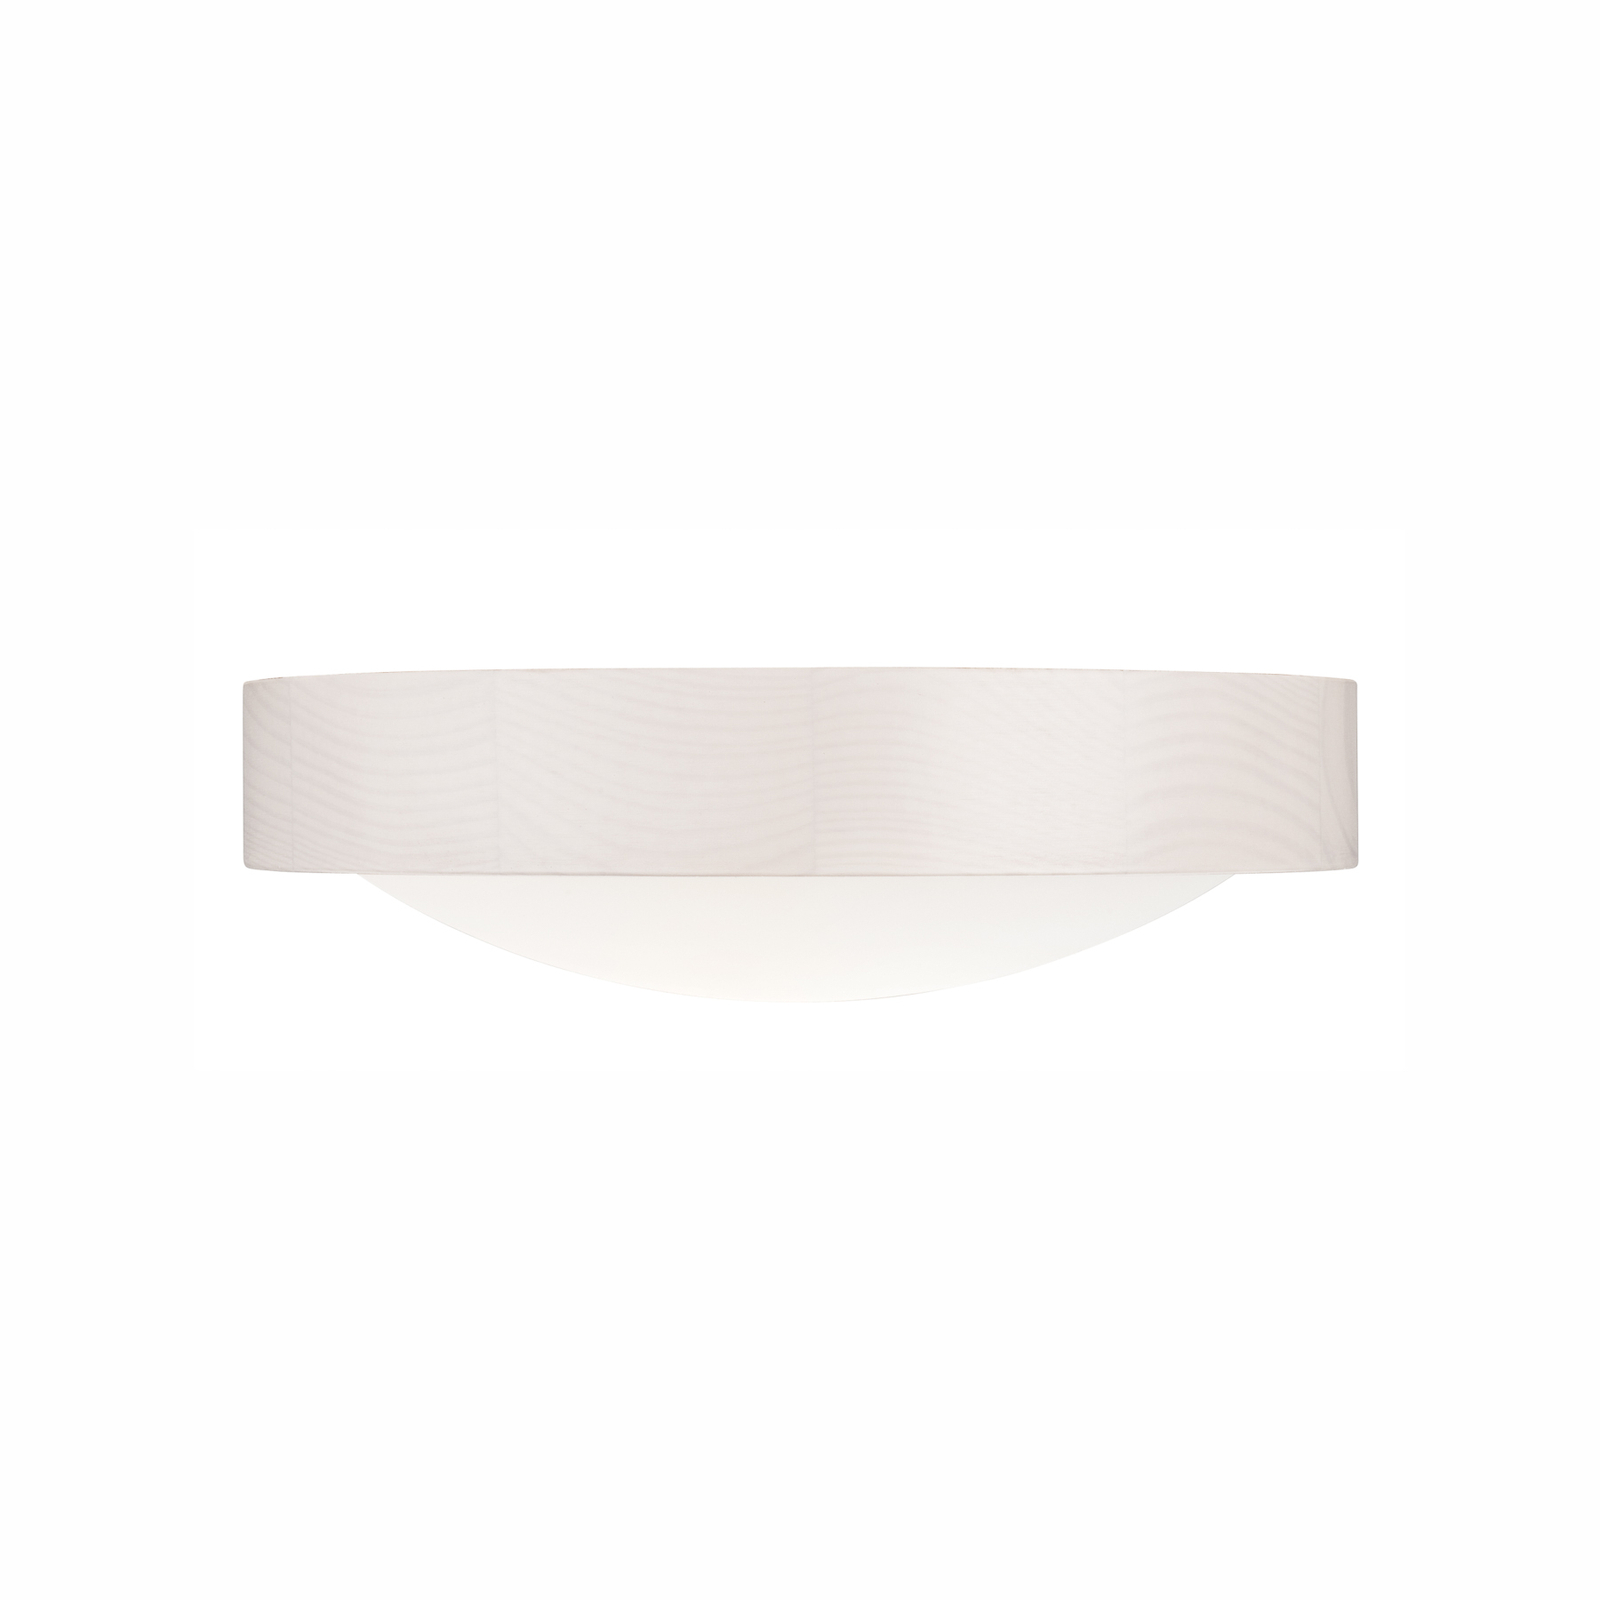 Envostar Kris ceiling light, Ø 27.5 cm, white